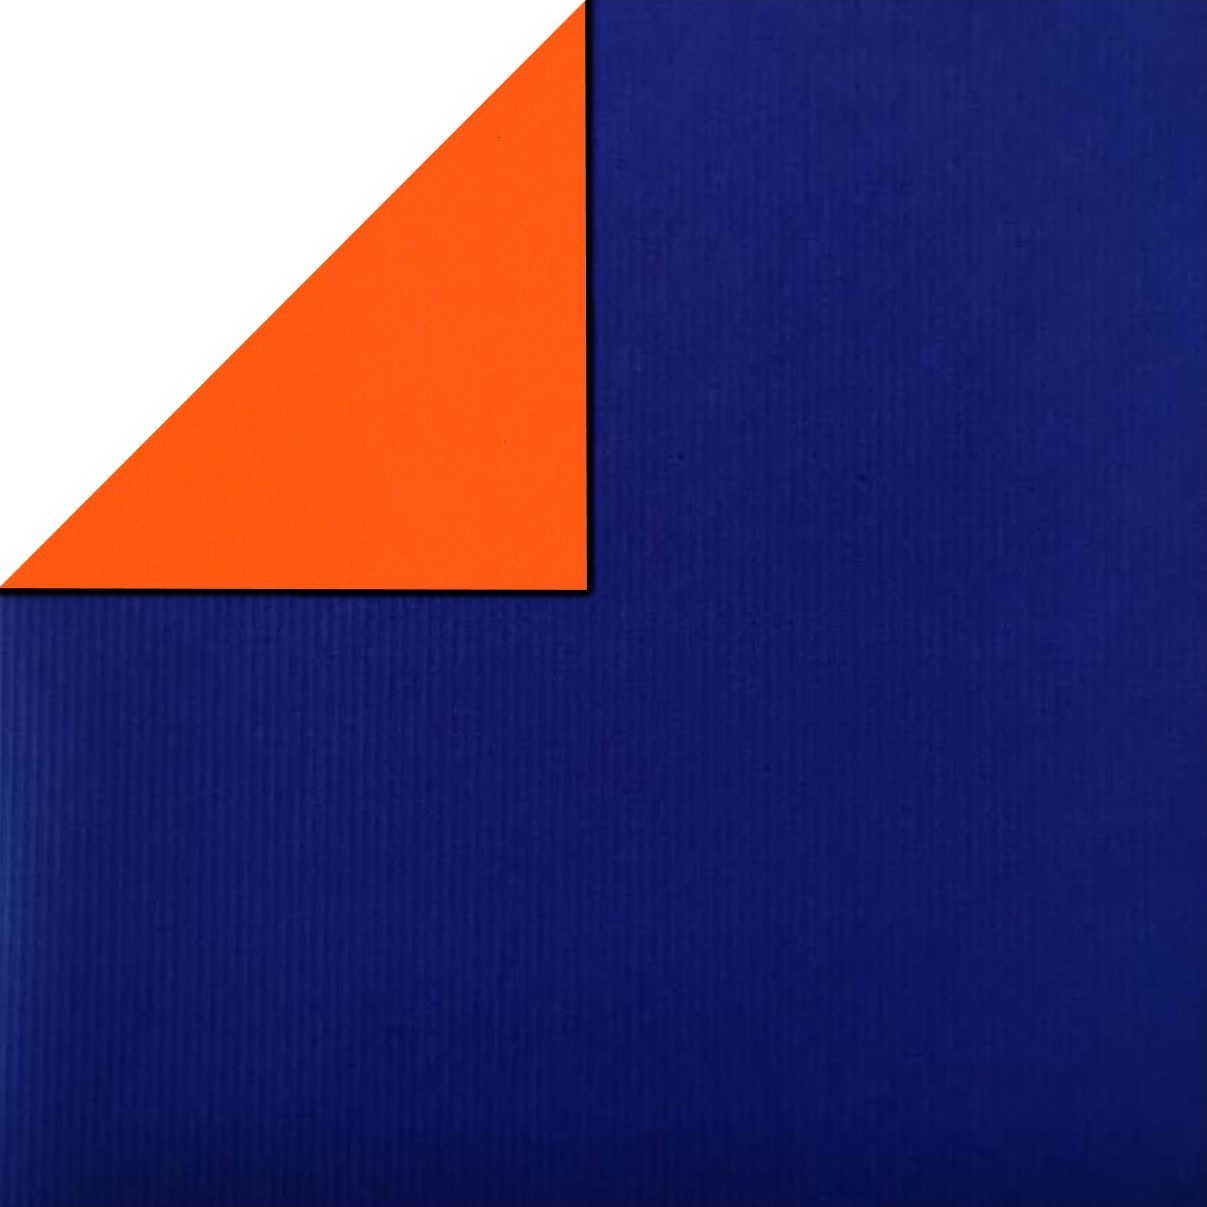 Inpakpapier voorzijde koningsblauw, achterzijde uni oranje met strepen persing, rollen van 50 meter, kies minimaal 4 artikelen in een assortimentsdoos.
 